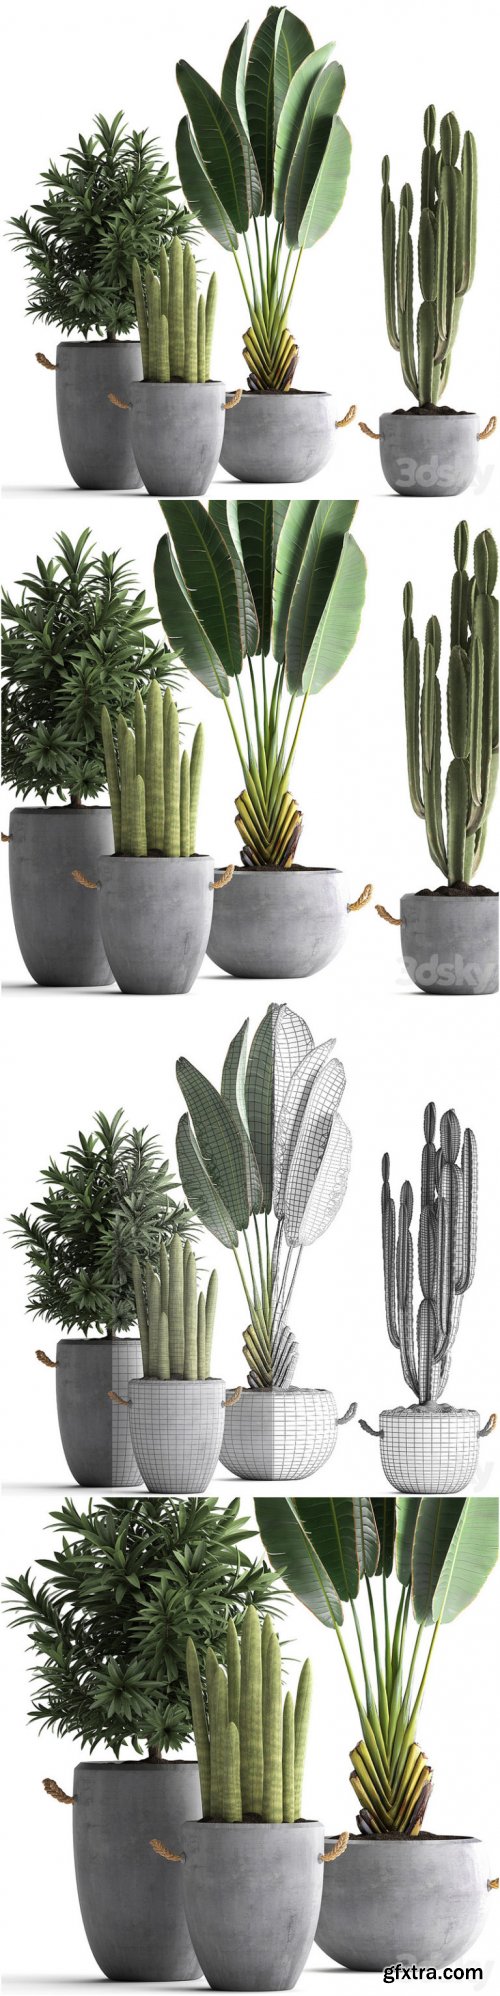 Plant Collection 434. Ravenala, concrete flowerpot, Cereus, cactus, oleander, indoor plants